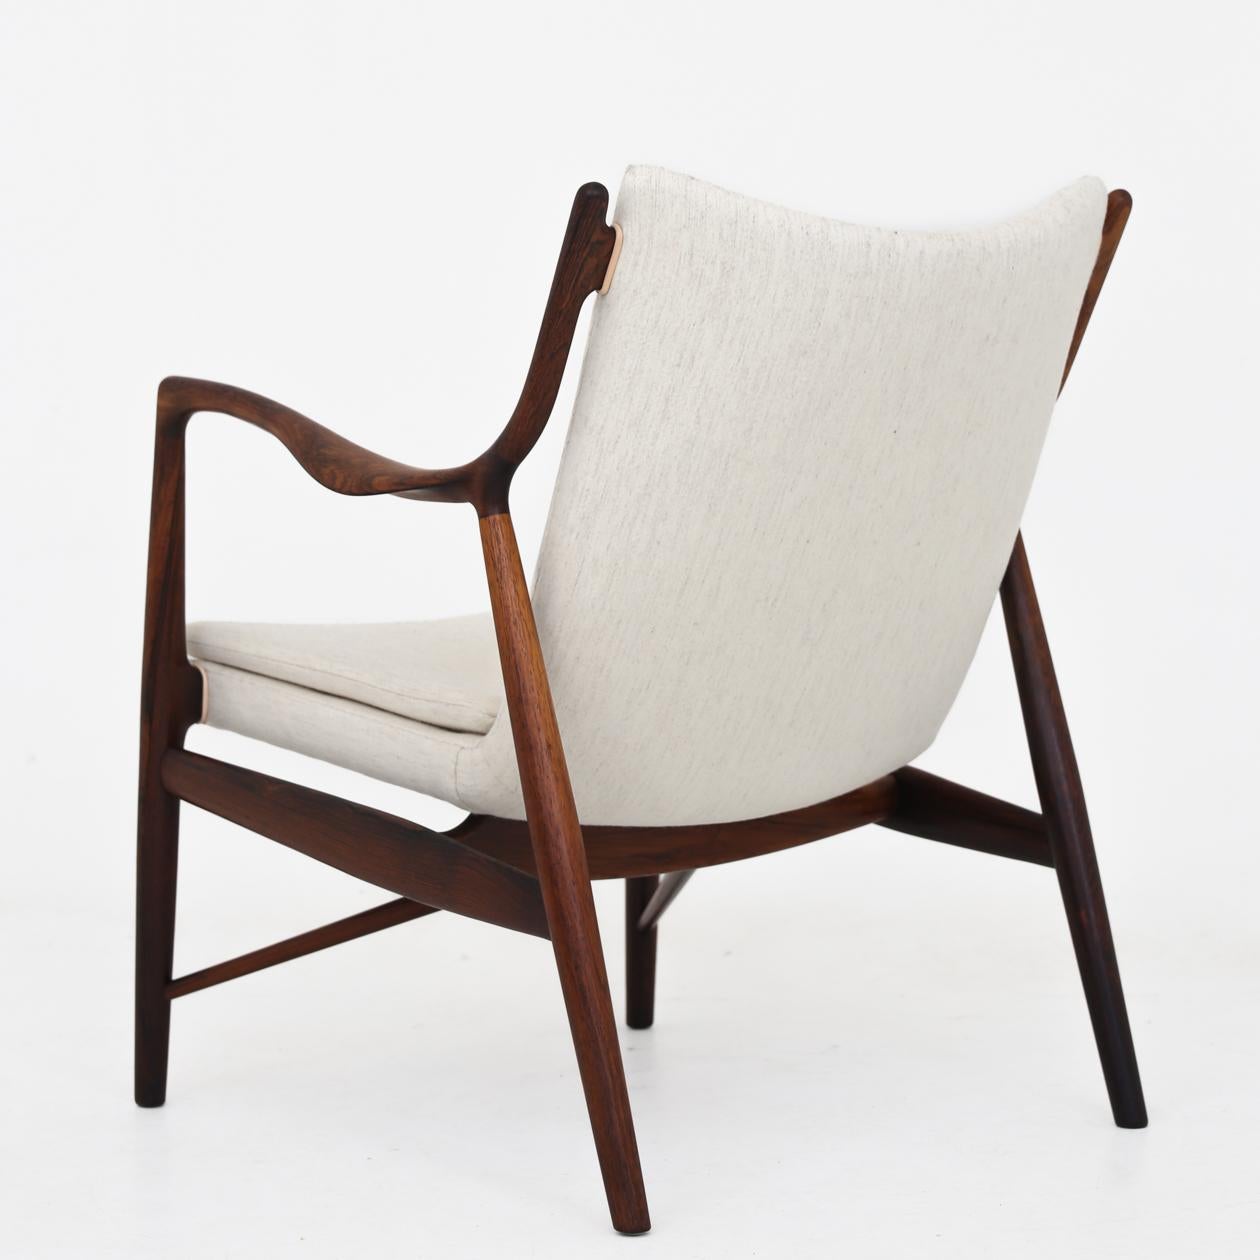 Modèle NV 45 - Rare fauteuil en palissandre de Rio (bois de rose brésilien) et laine neuve et légère 'Savak' avec finitions en cuir naturel. Cachet de l'atelier. Exposé pour la première fois à l'exposition de meubles de la Guild des ébénistes en